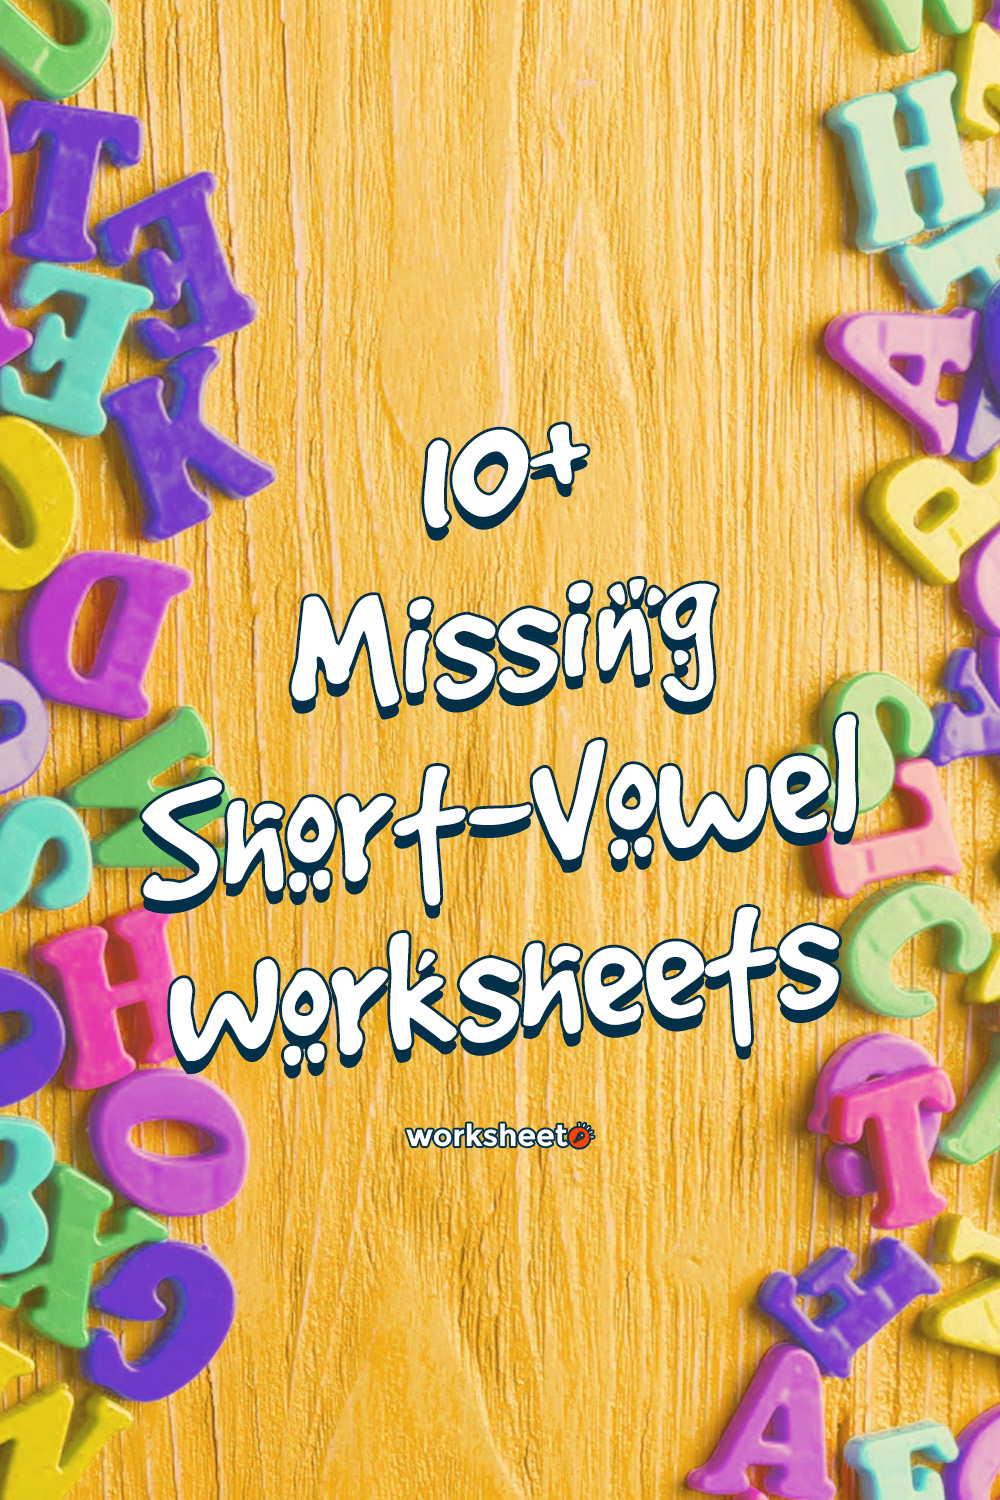 14 Images of Missing Short-Vowel Worksheets